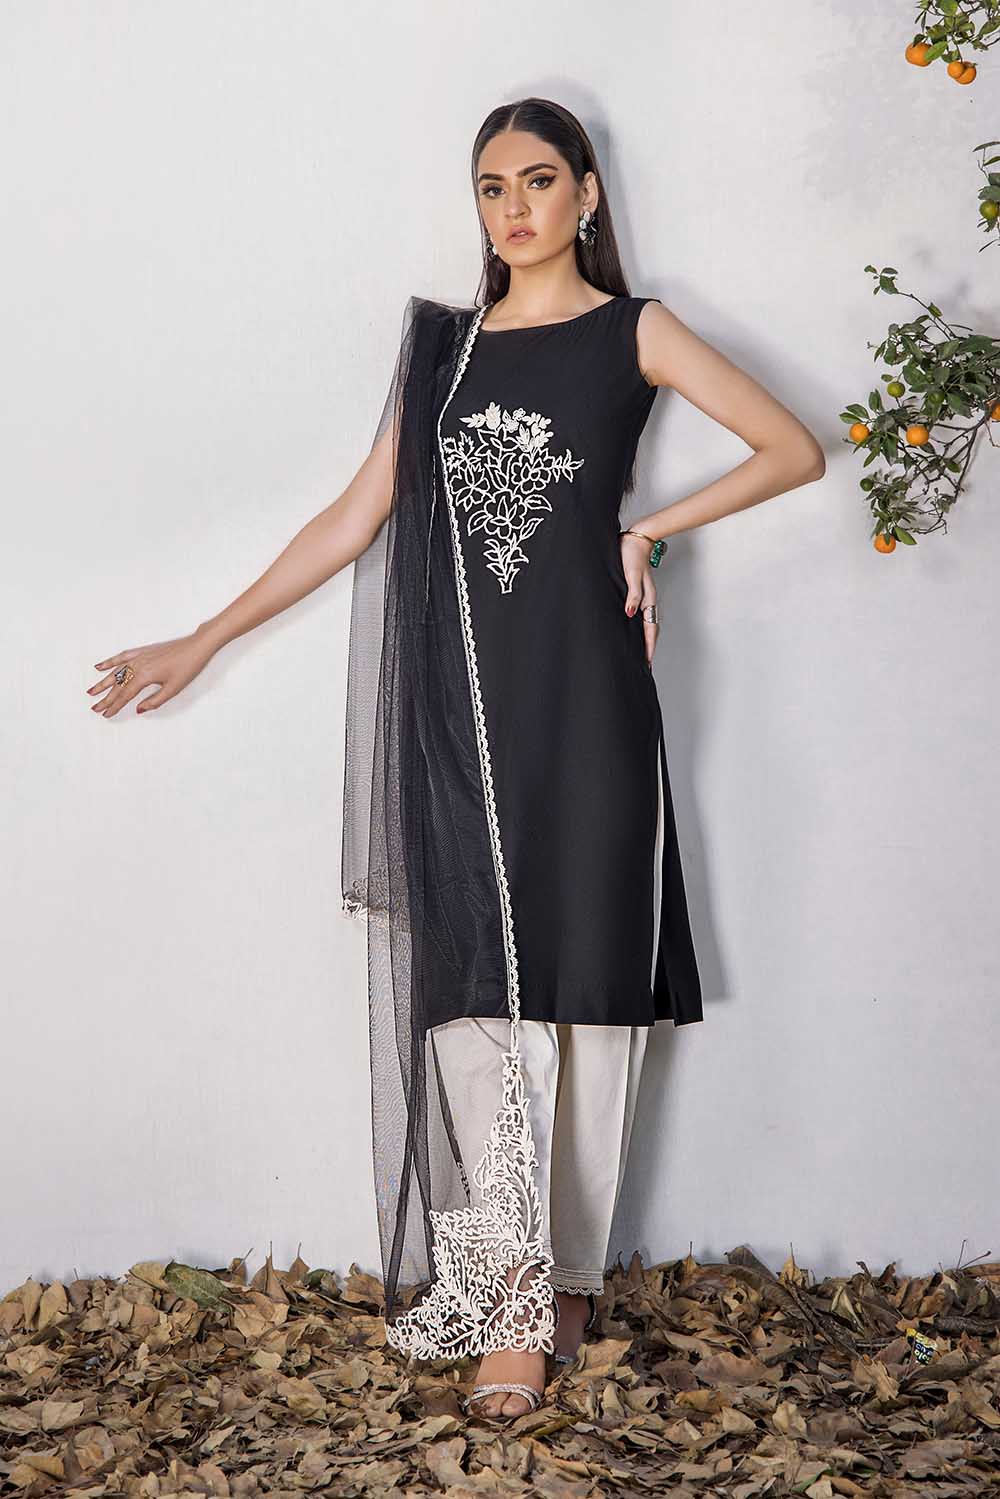 Khuda Baksh Creations Ladies Stitched 3Piece Suit F-123 Black